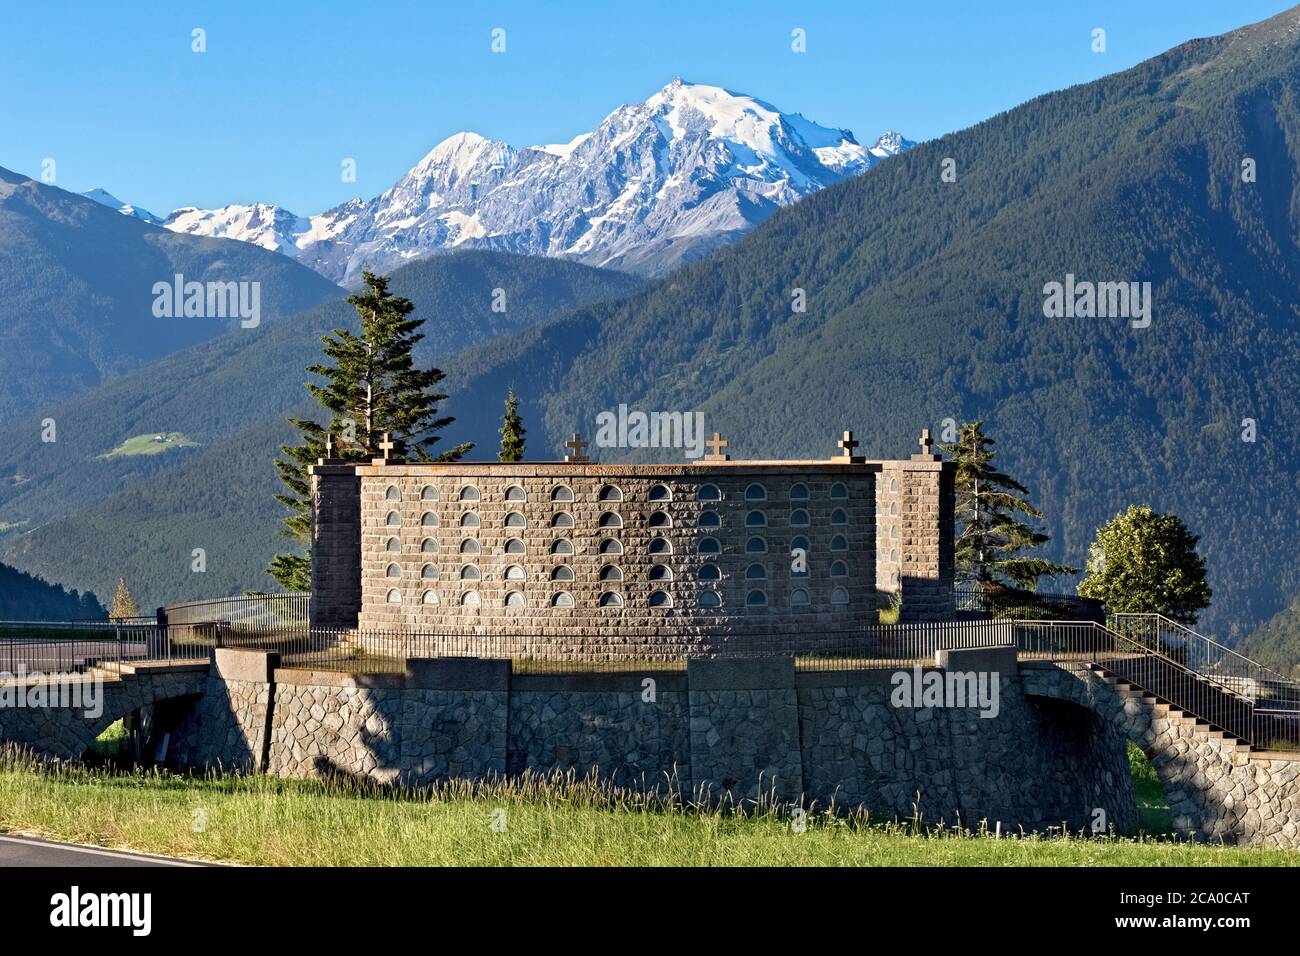 Il monumento commemorativo militare del passo di Resia è stato costruito nel 1939. Sullo sfondo le Ortles, la montagna più alta dell'Alto Adige. Malles, Italia. Foto Stock